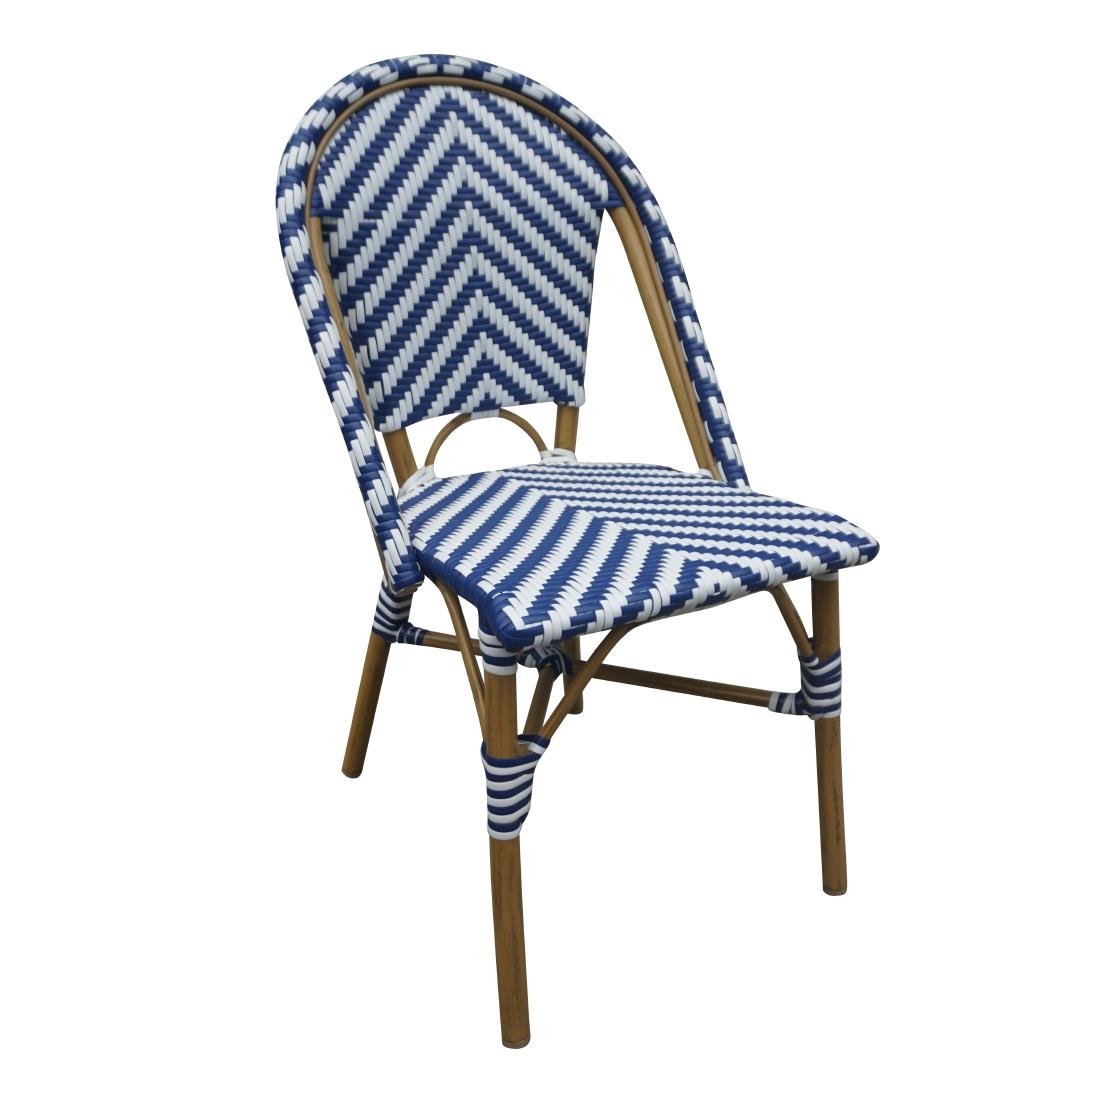 Bolero Rattan Beistellstuhl im Pariser Stil Blau (2 Stück)